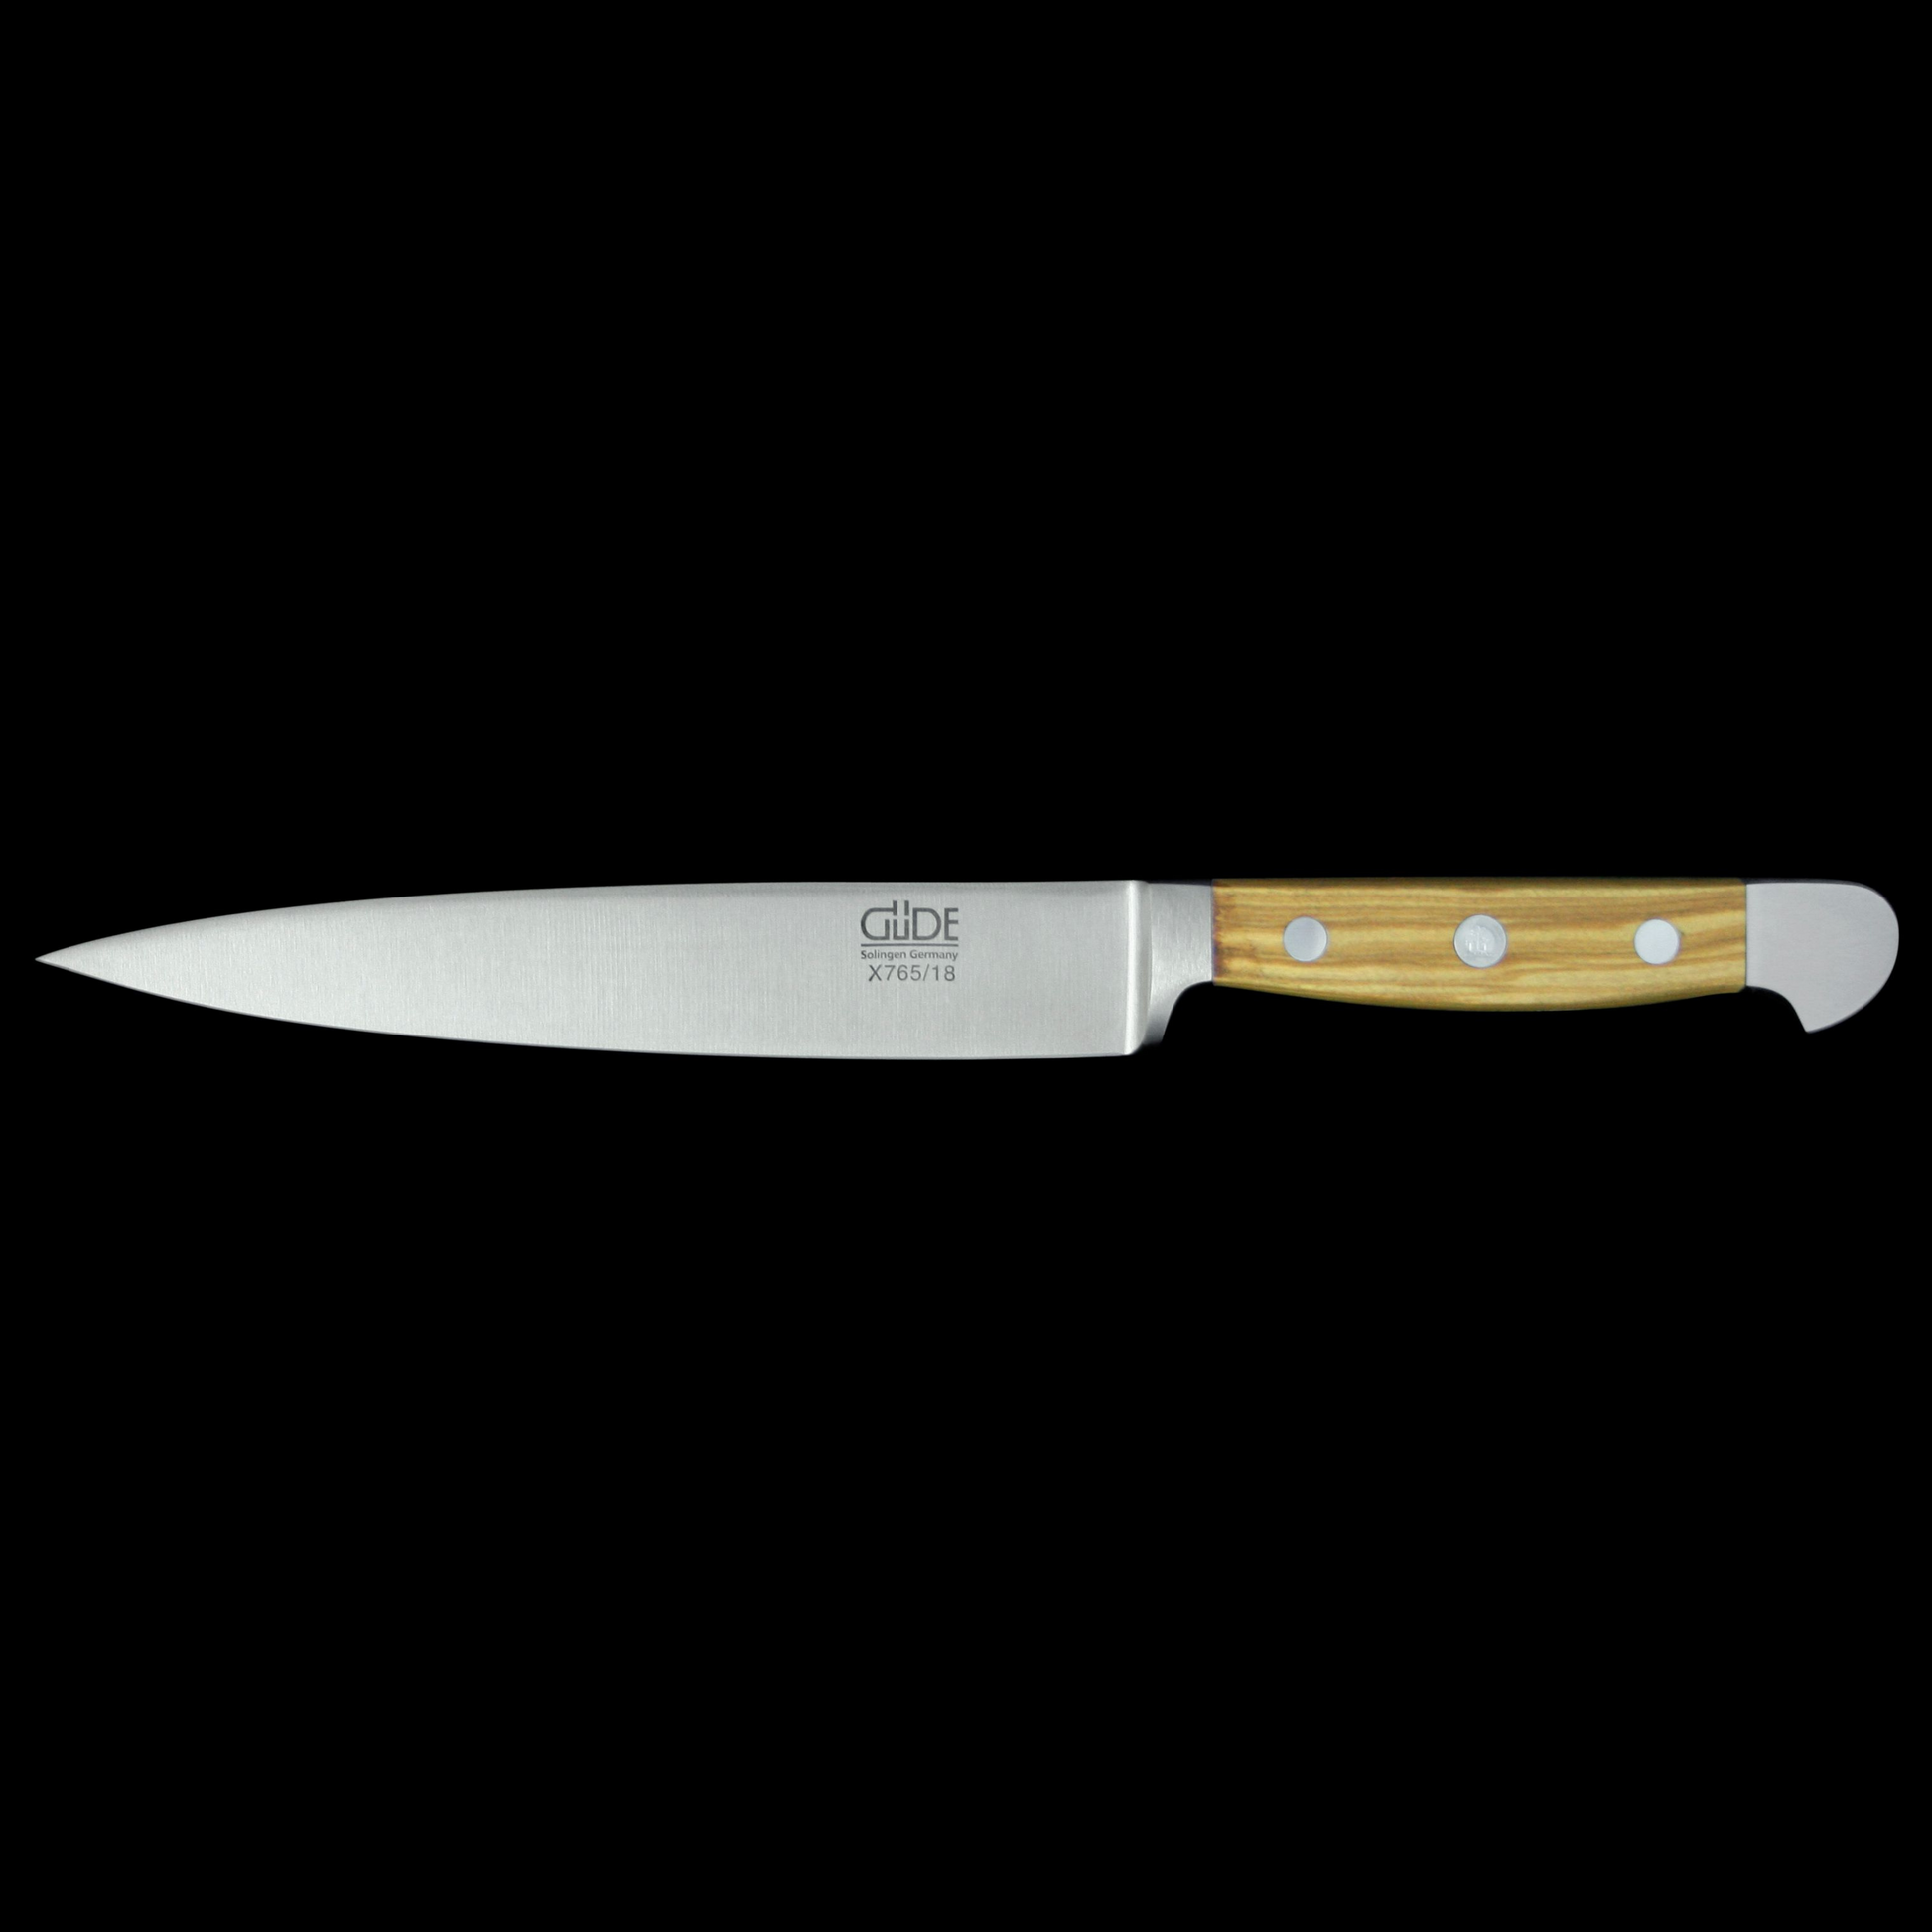 Gude Alpha Olive Flexible Fillet Knife 7-in.